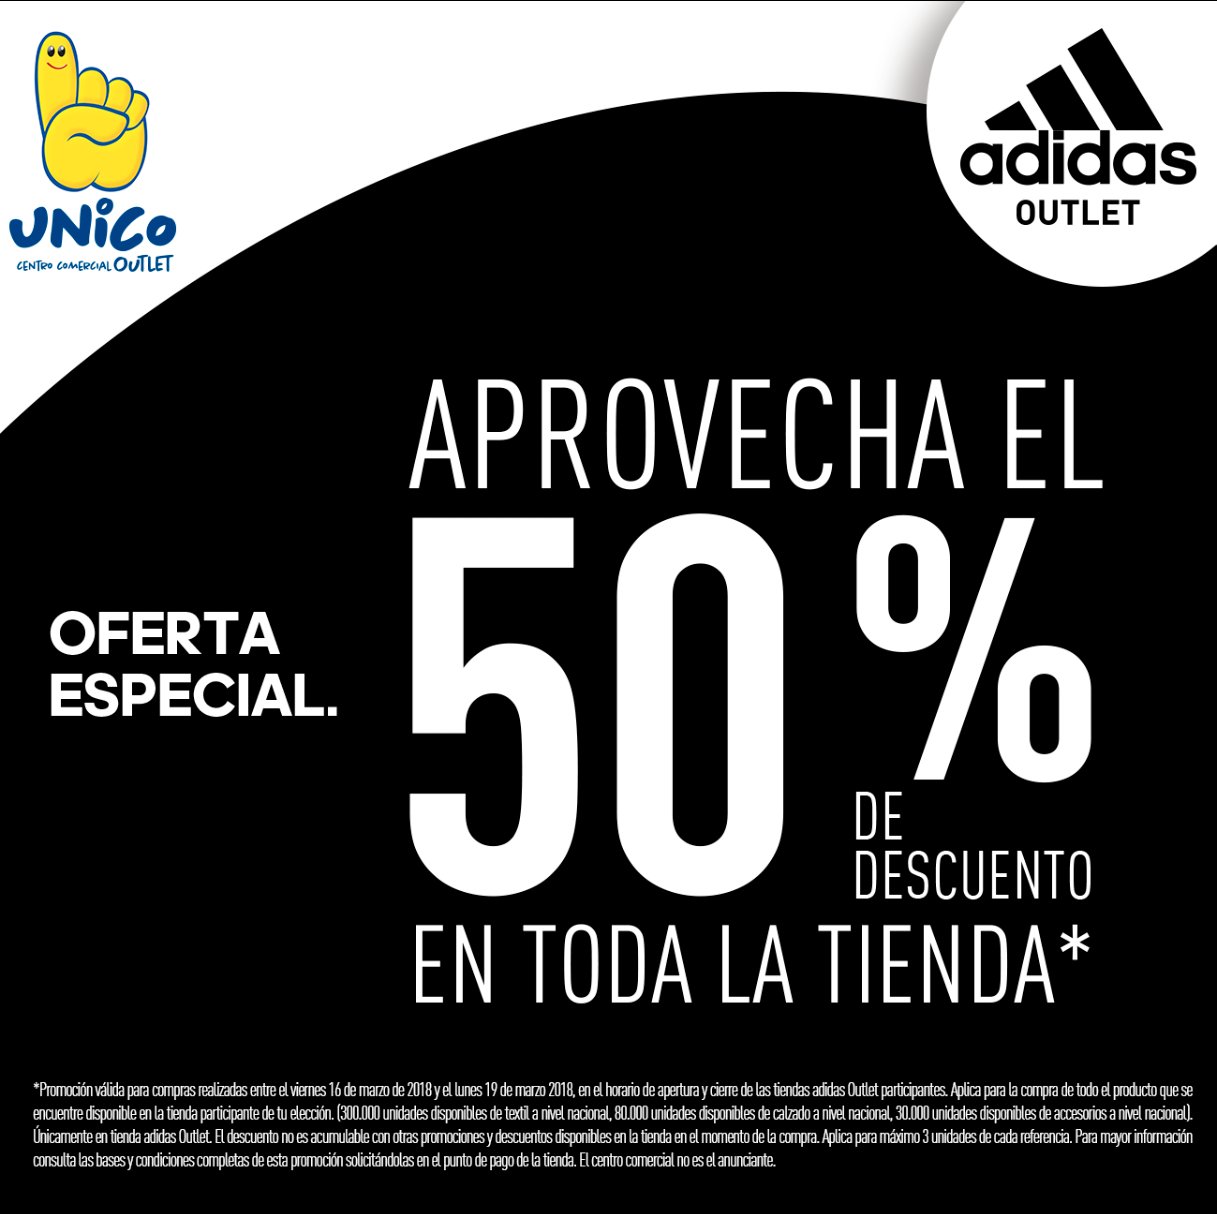 UNICO Outlet op Twitter: "¡ADIDAS con el 50 % de descuento en toda la tienda!  🤩🤩🤩Ven a nuestros puntos Adidas y no te quedes sin tus compras en  nuestro #Trasnochón #UNICO https://t.co/xMoNUj8hoL" /